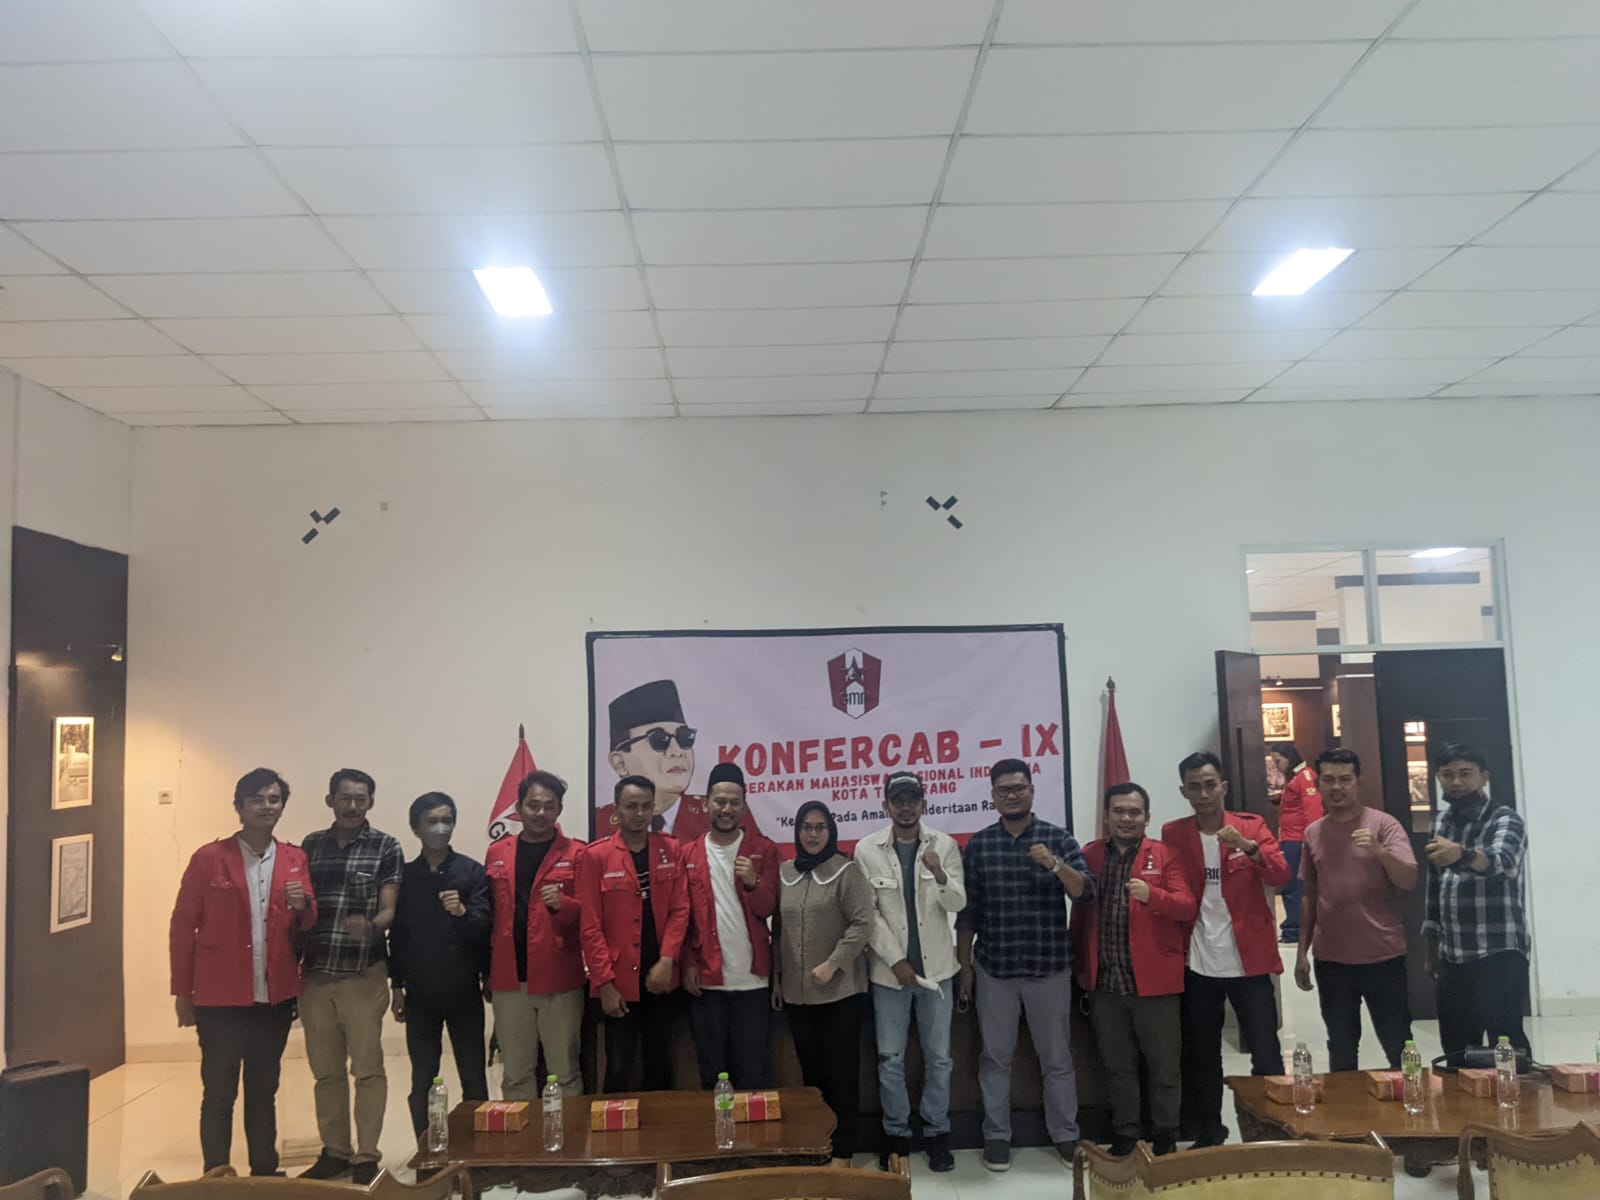 Reza Setiawan akhirnya terpilih sebagai Ketua Dewan Pimpinan Cabang (DPC) Gerakan Mahasiswa Nasional Indonesia (GMNI) Kota Tangerang dalam Konferensi Cabang (Konfercab) IX.